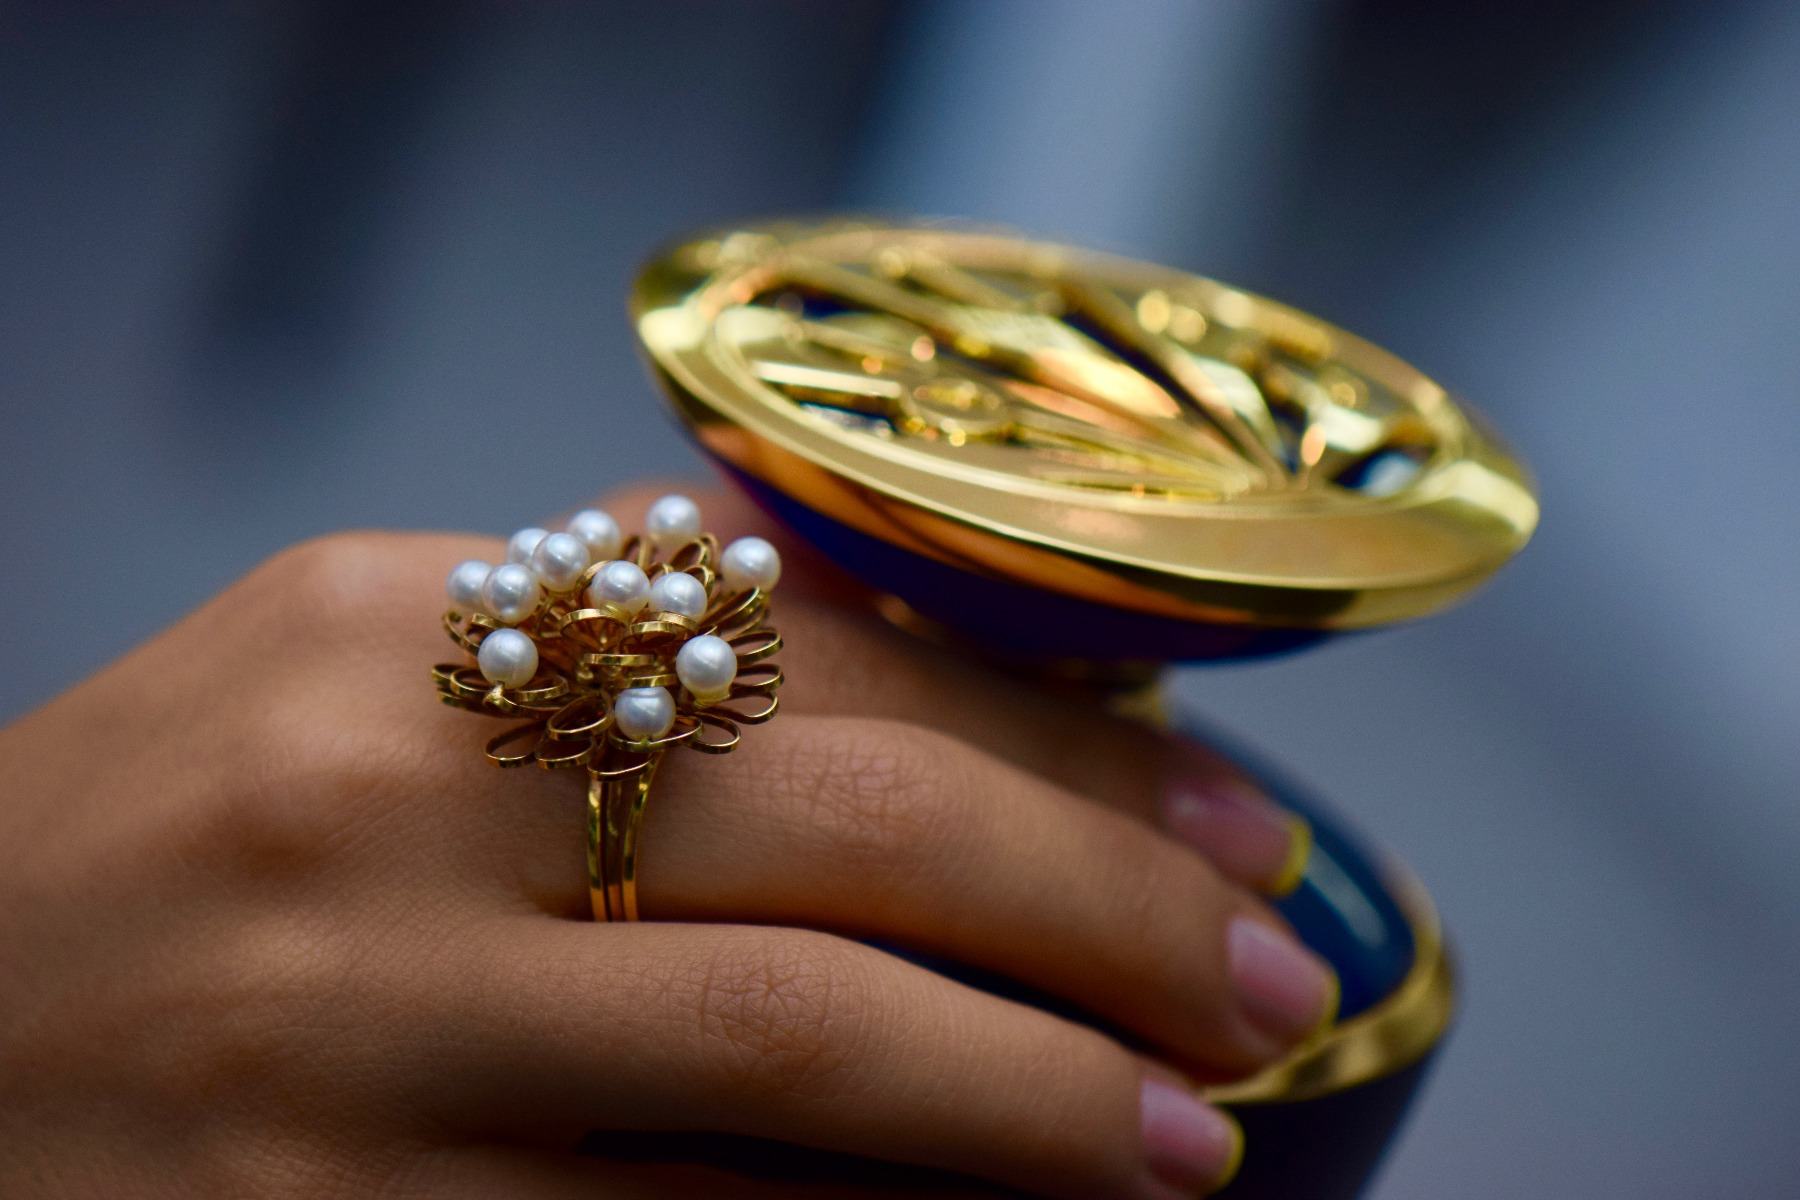 златен пръстен с перли до парфюм